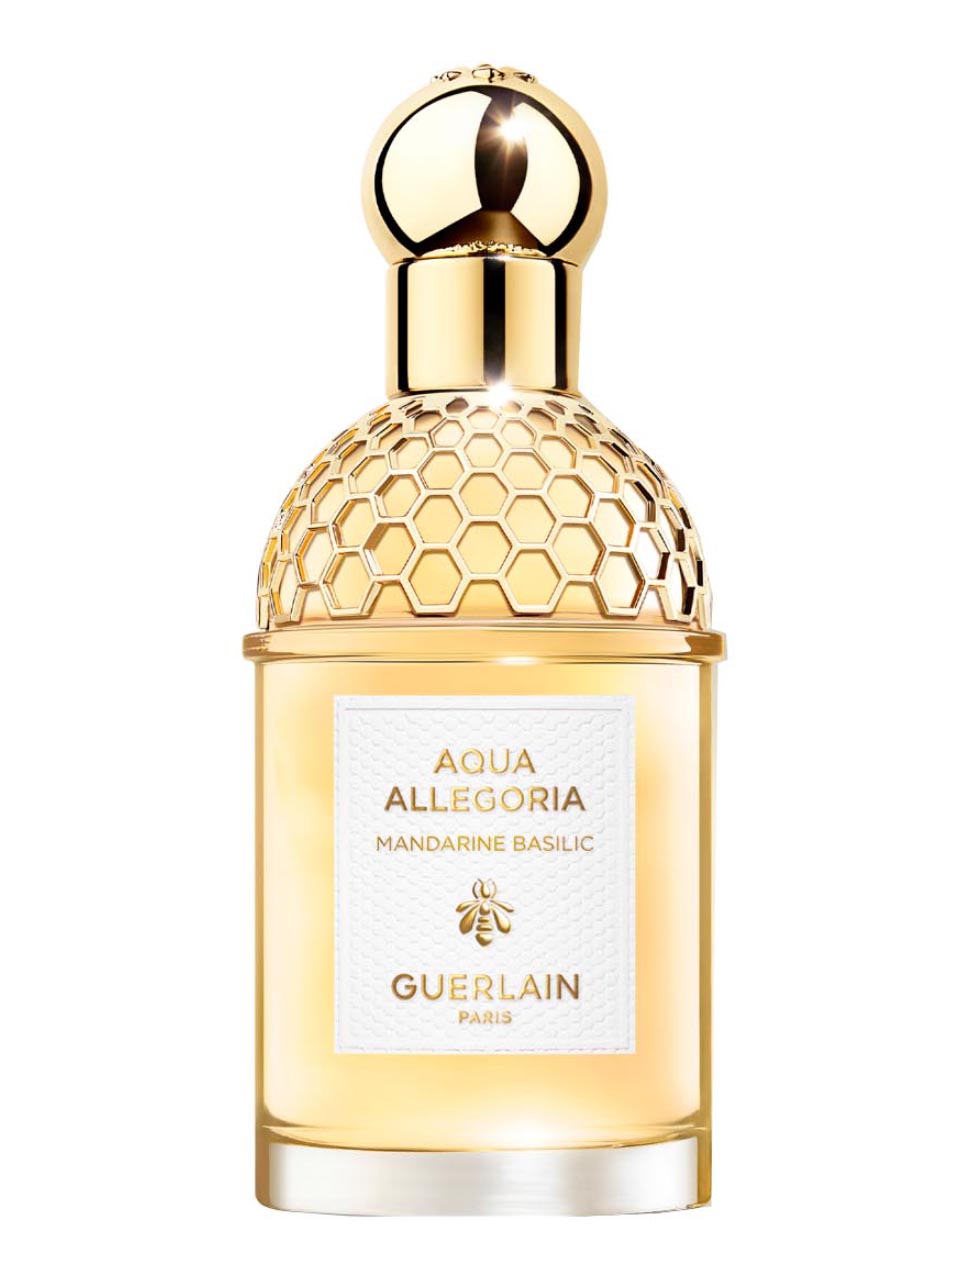 Guerlain Aqua Allegoria Mandarine Basilique Eau de Toilette 75 ml null - onesize - 1